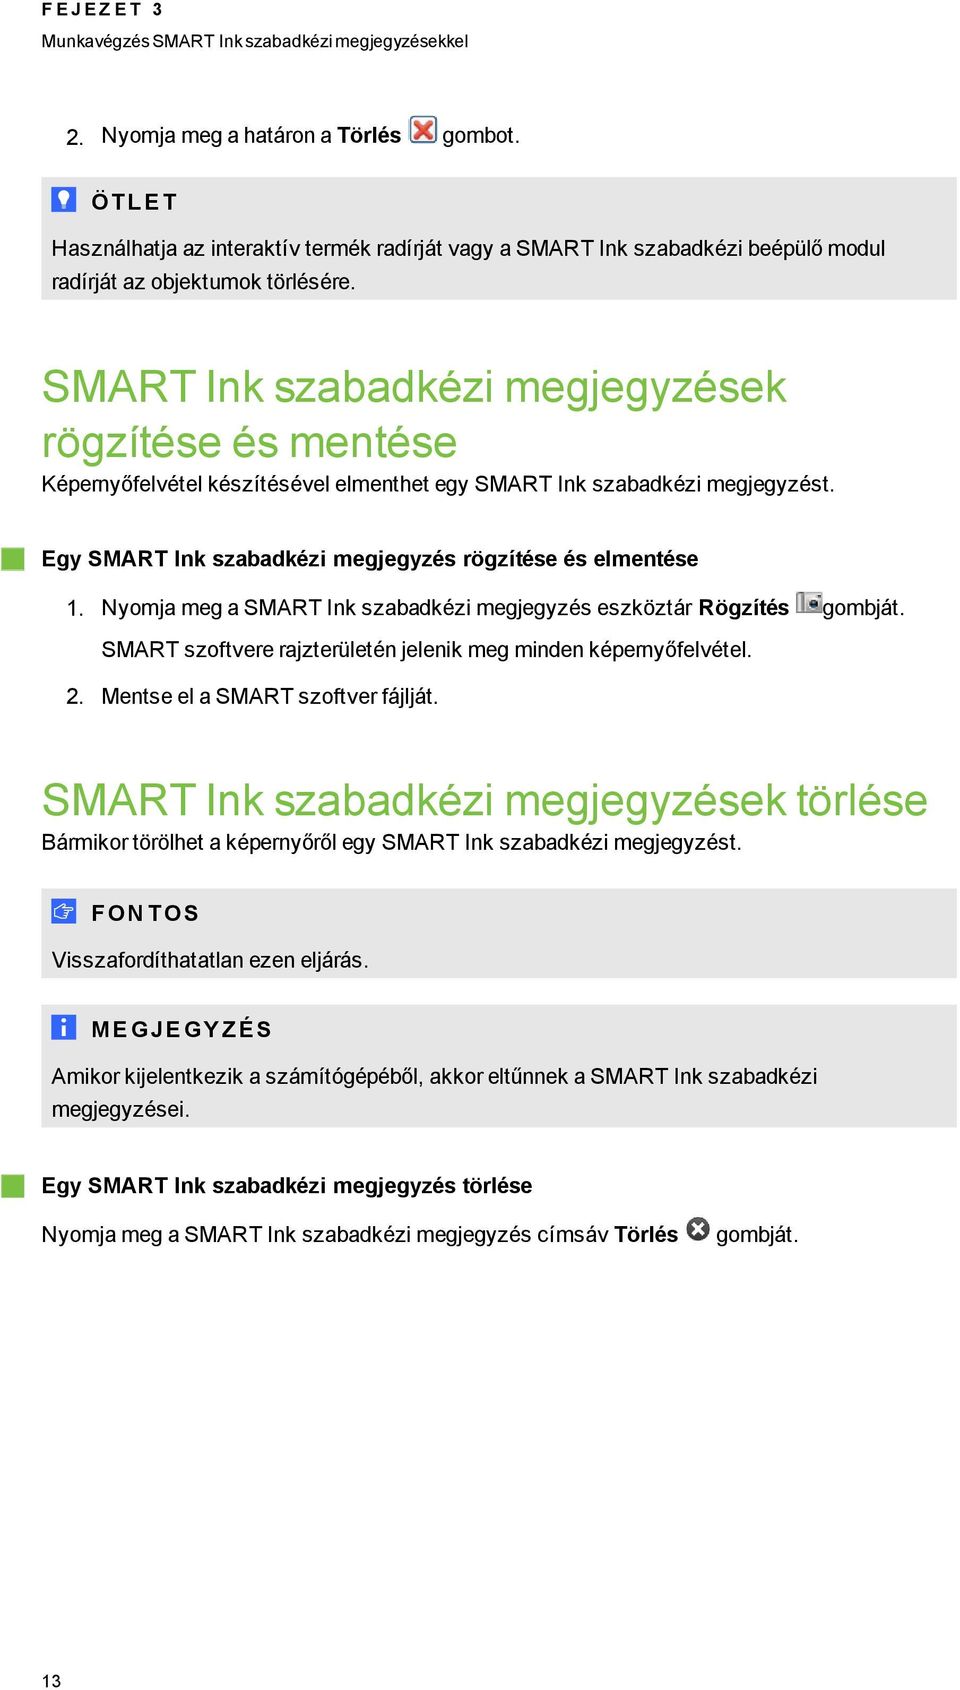 SMART Ink szabadkézi mejeyzések rözítése és mentése Képernyőfelvétel készítésével elmenthet ey SMART Ink szabadkézi mejeyzést. Ey SMART Ink szabadkézi mejeyzés rözítése és elmentése 1.